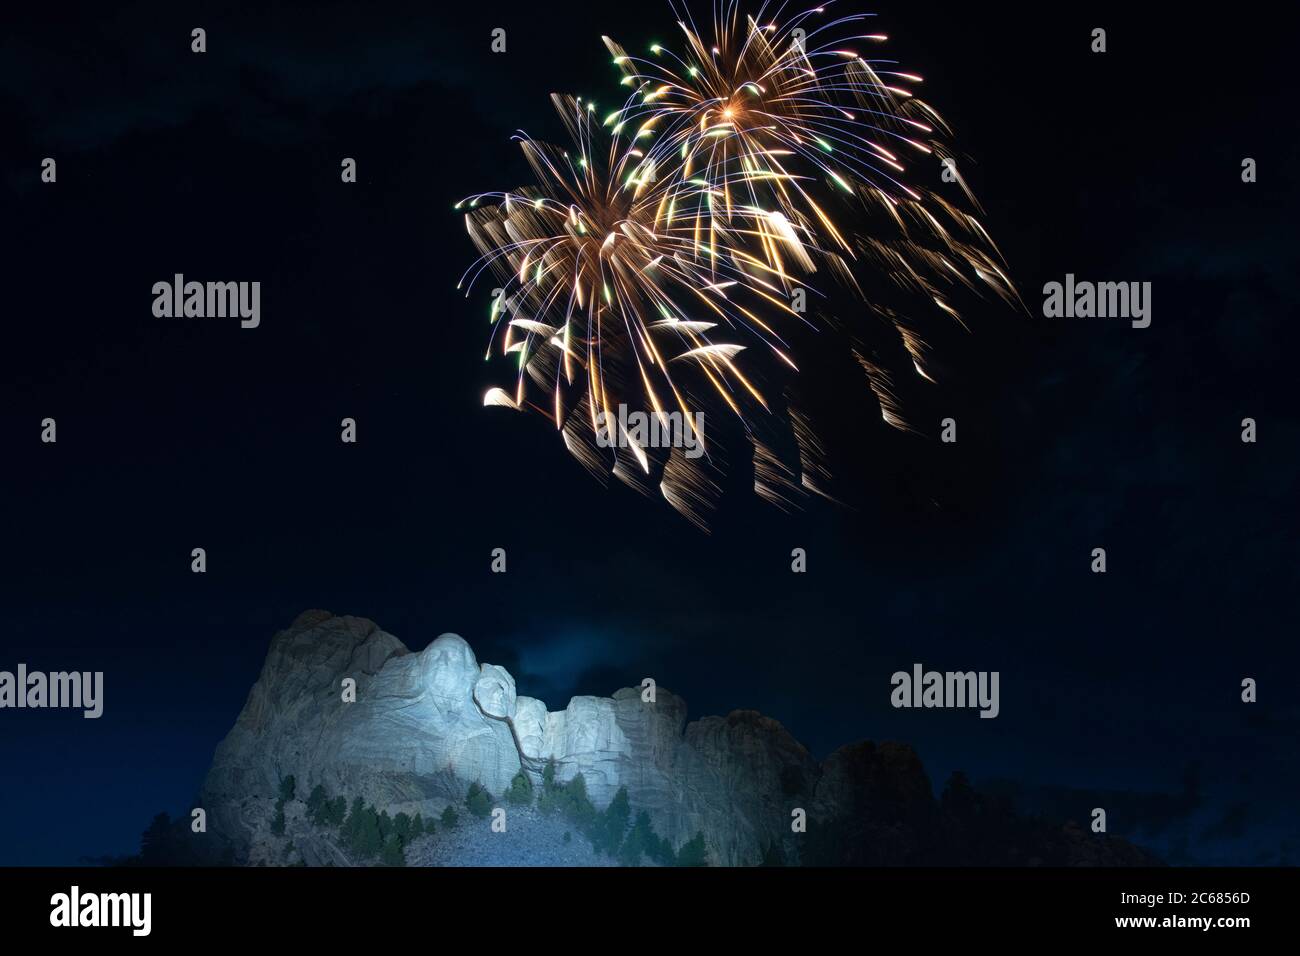 Des feux d'artifice explosent au-dessus des visages colossaux de la sculpture au monument national de Mount Rushmore pendant le Salute to America le 3 juillet 2020 à Keystone, Dakota du Sud. Banque D'Images